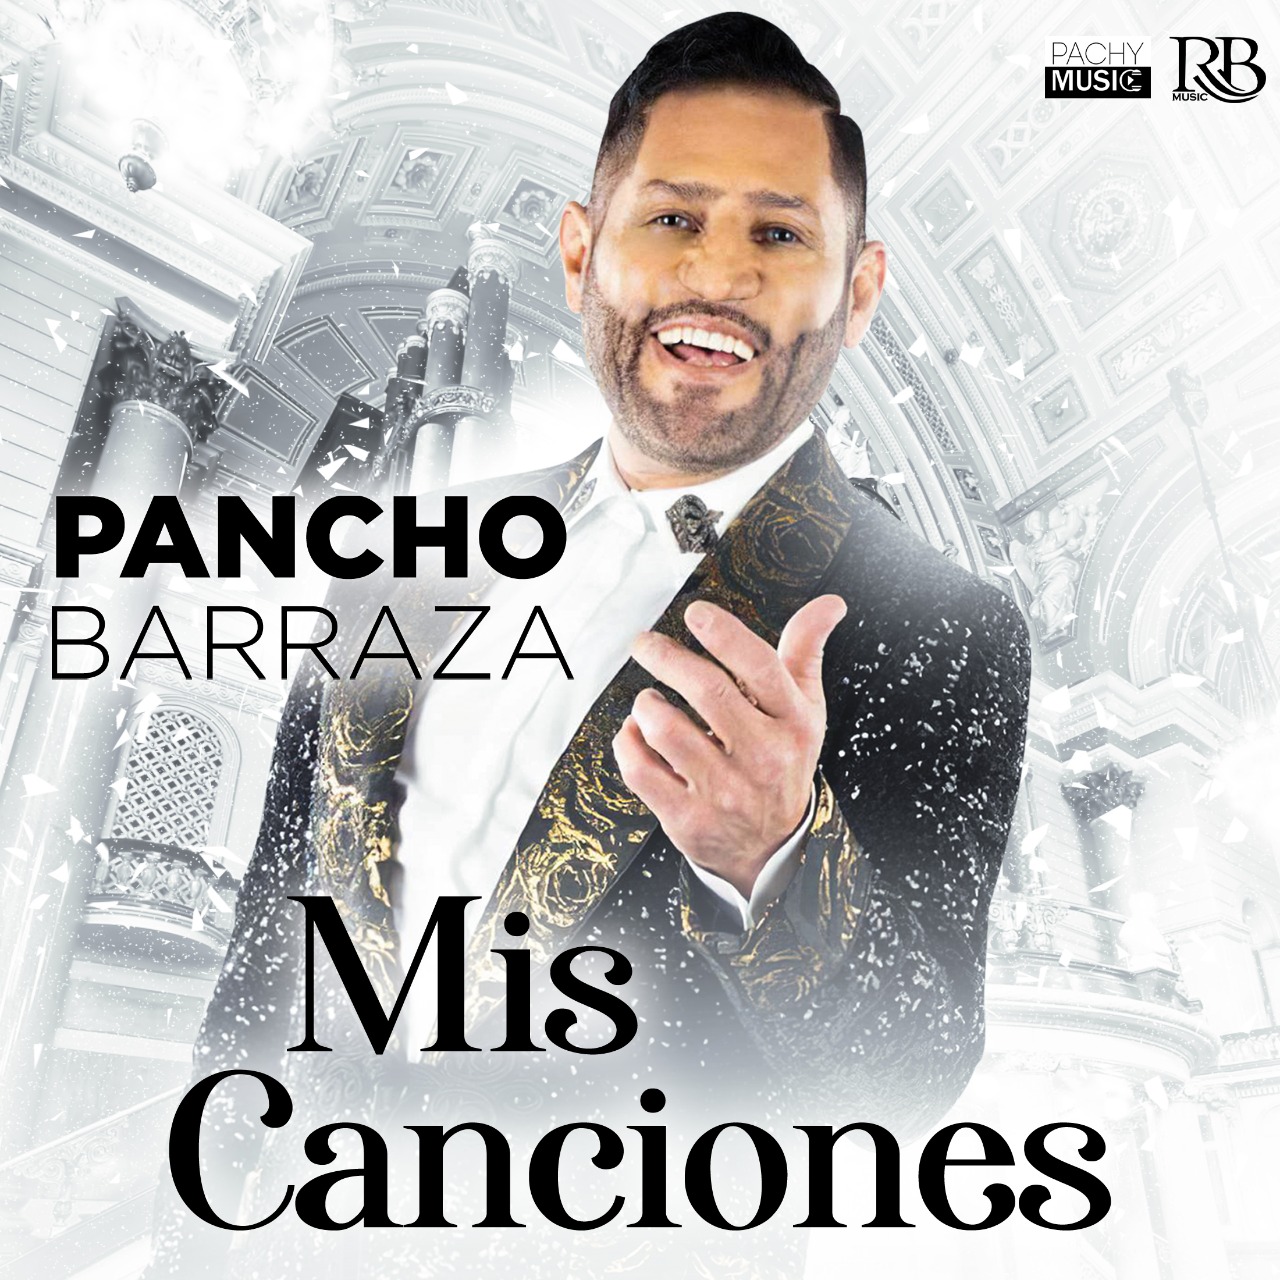 PANCHO BARRAZA lanza nuevo sencillo “Mis Canciones”